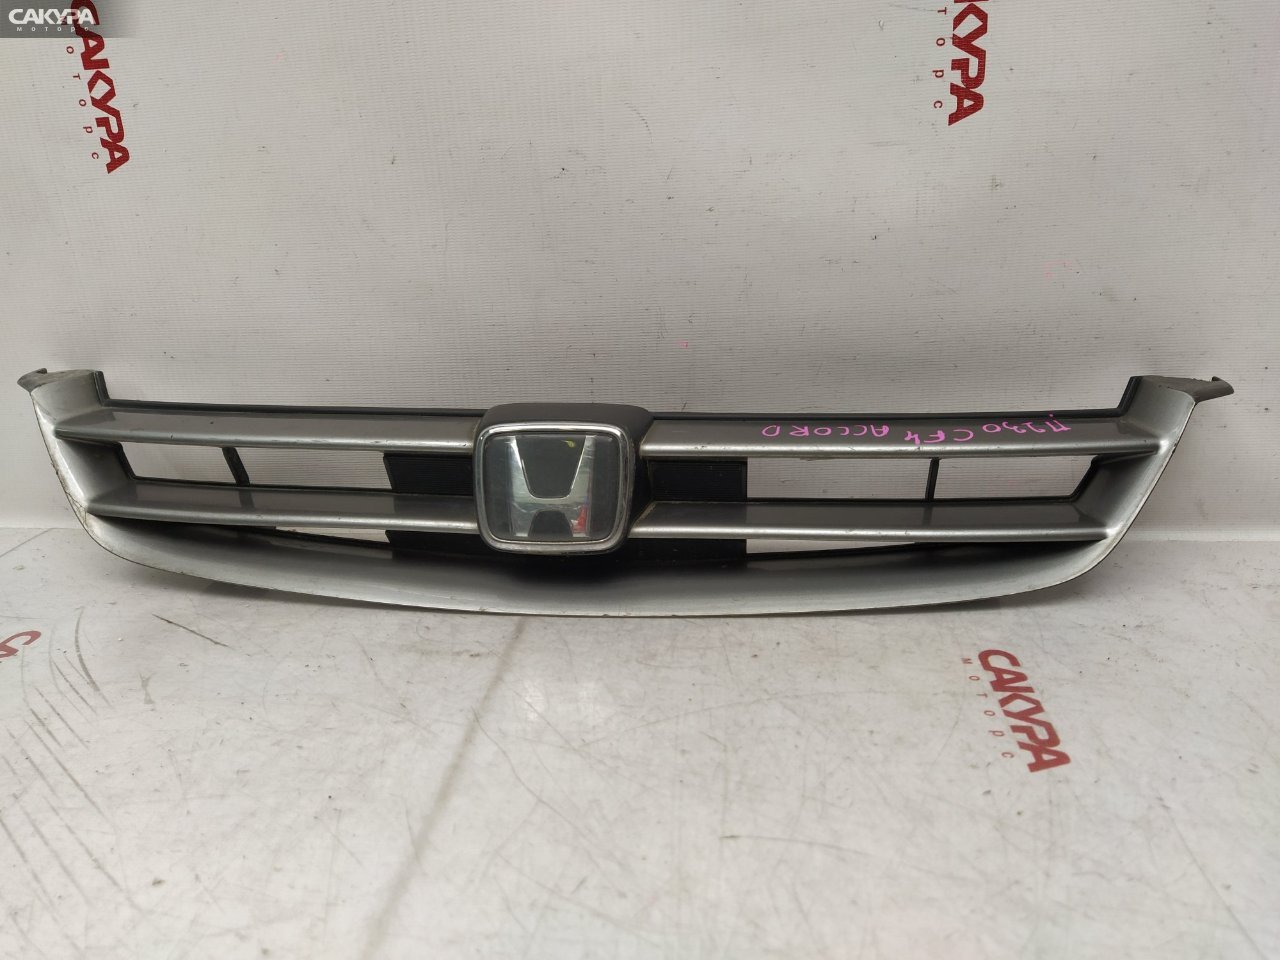 Решетка радиатора Honda Accord CF4 F20B: купить в Сакура Красноярск.